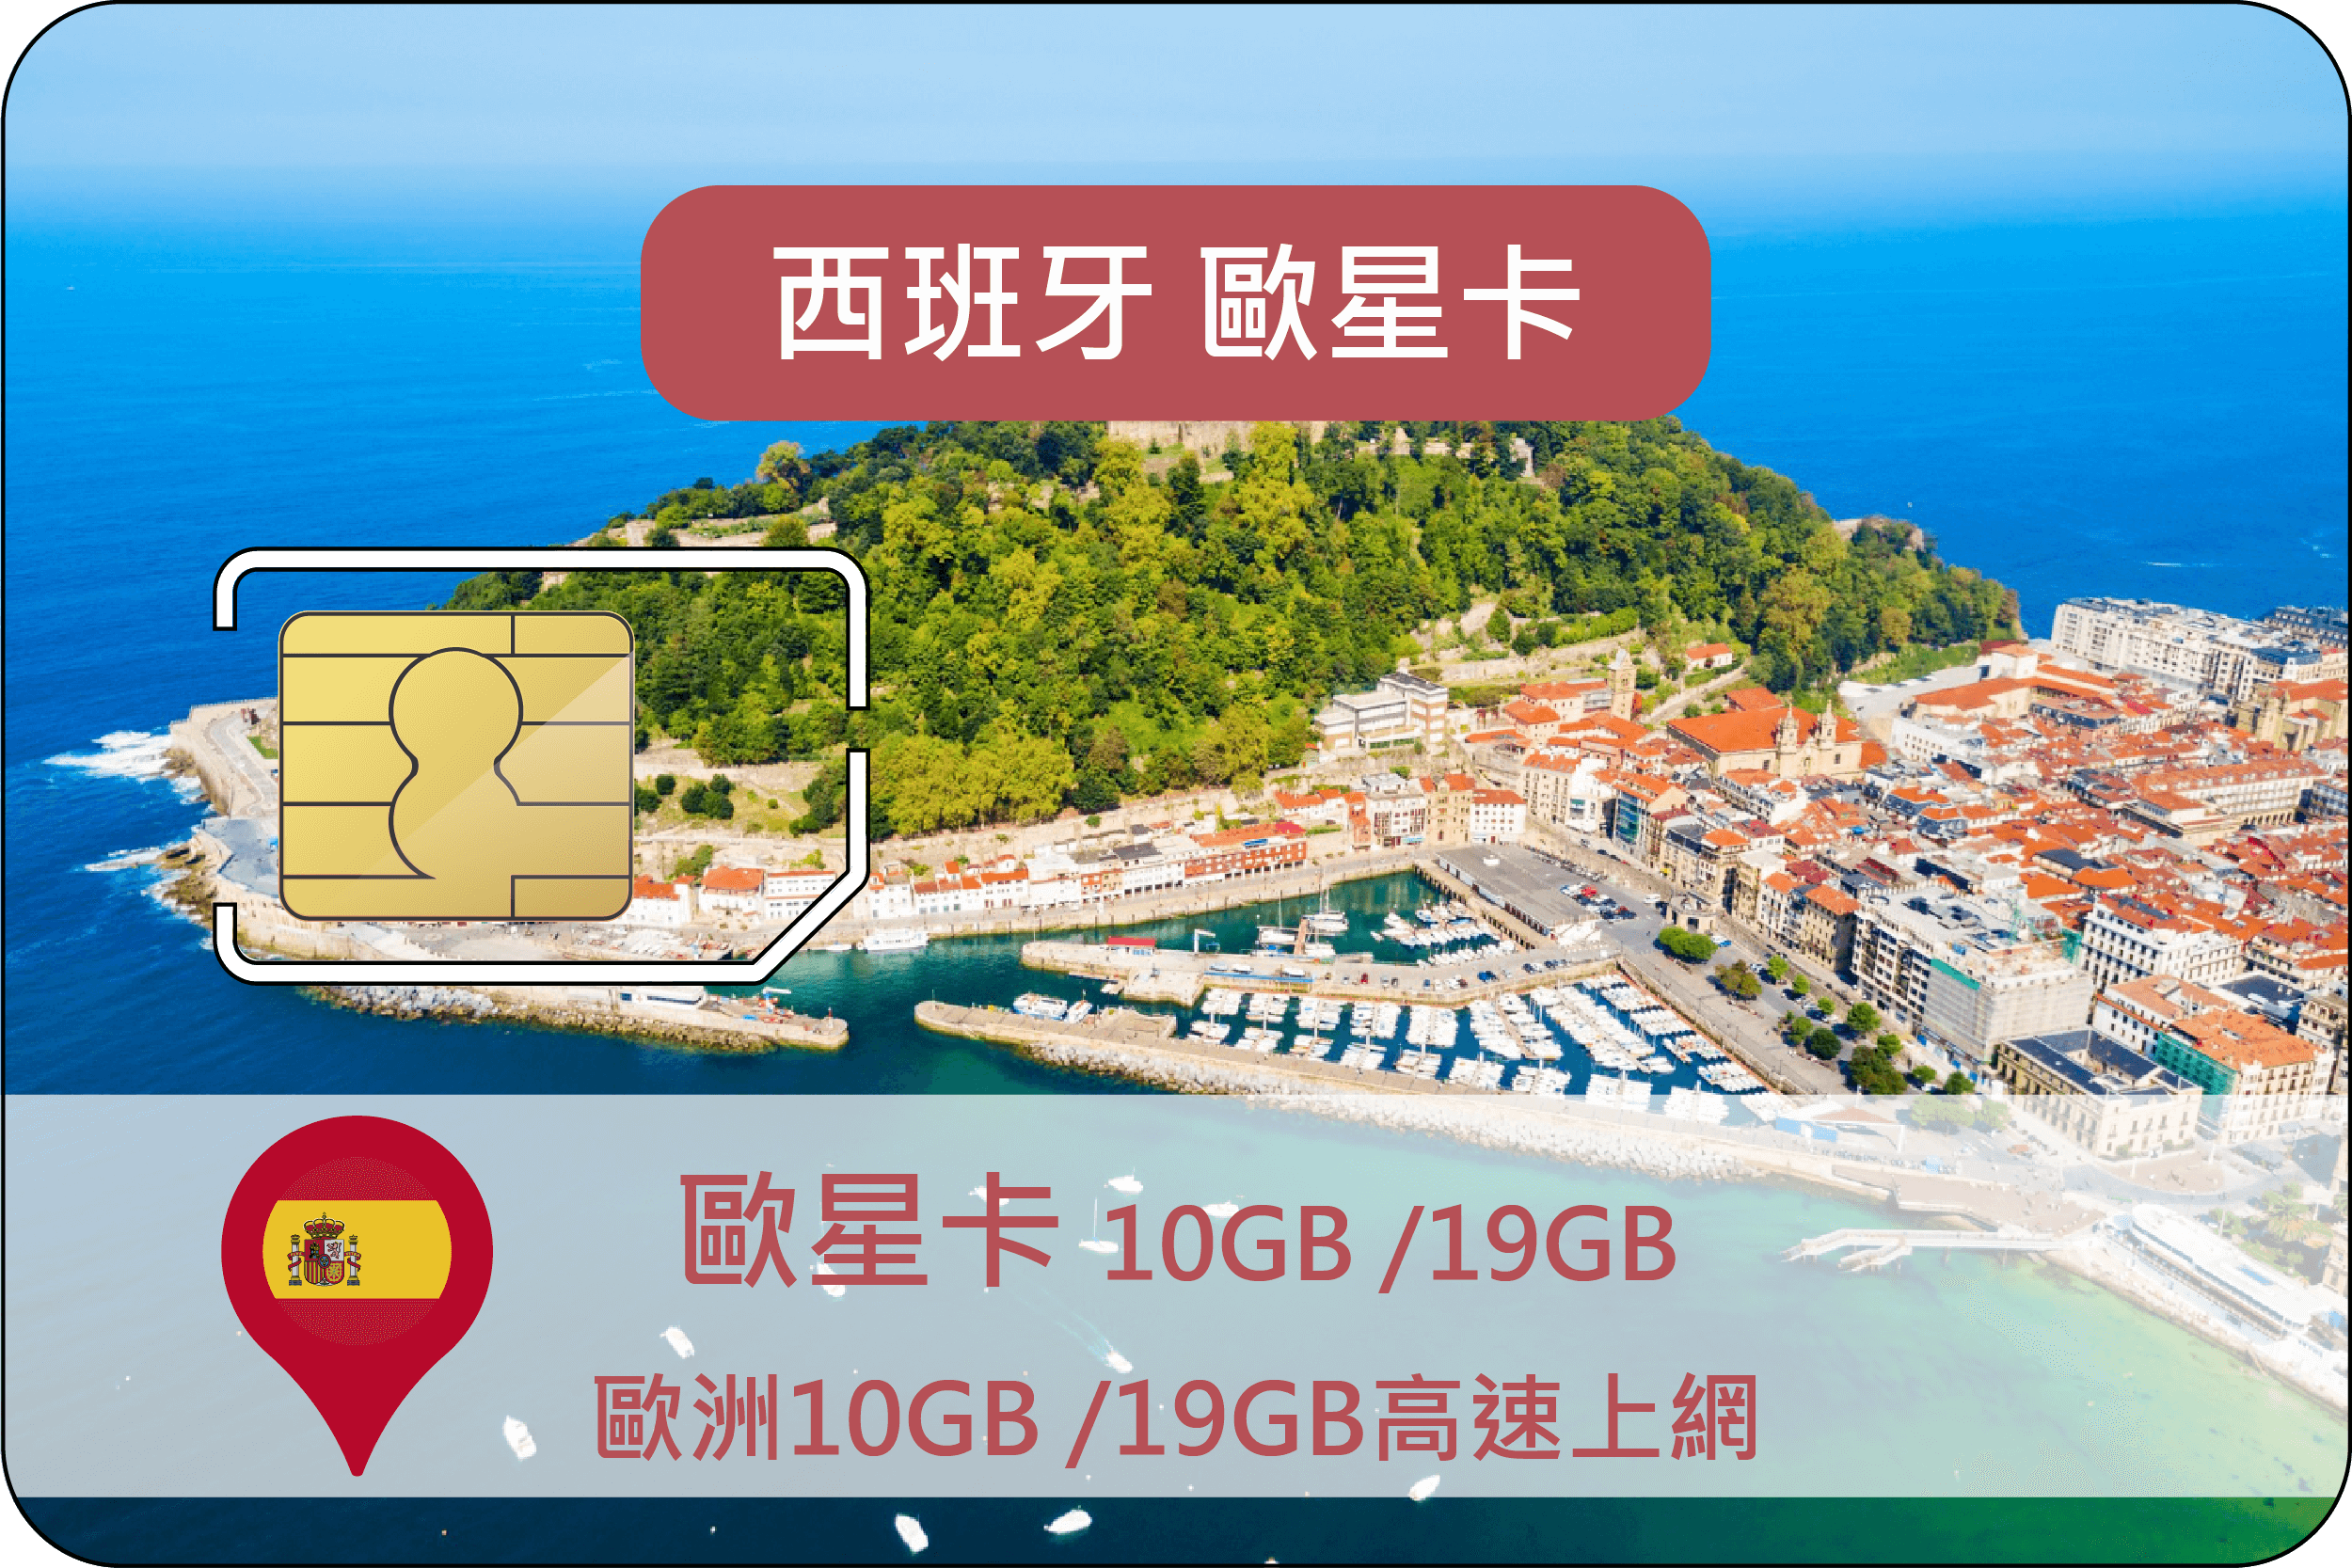 歐星卡歐洲10GB /19GB高速上網|西班牙無限量高速26天+200分鐘歐洲通話(需要護照)